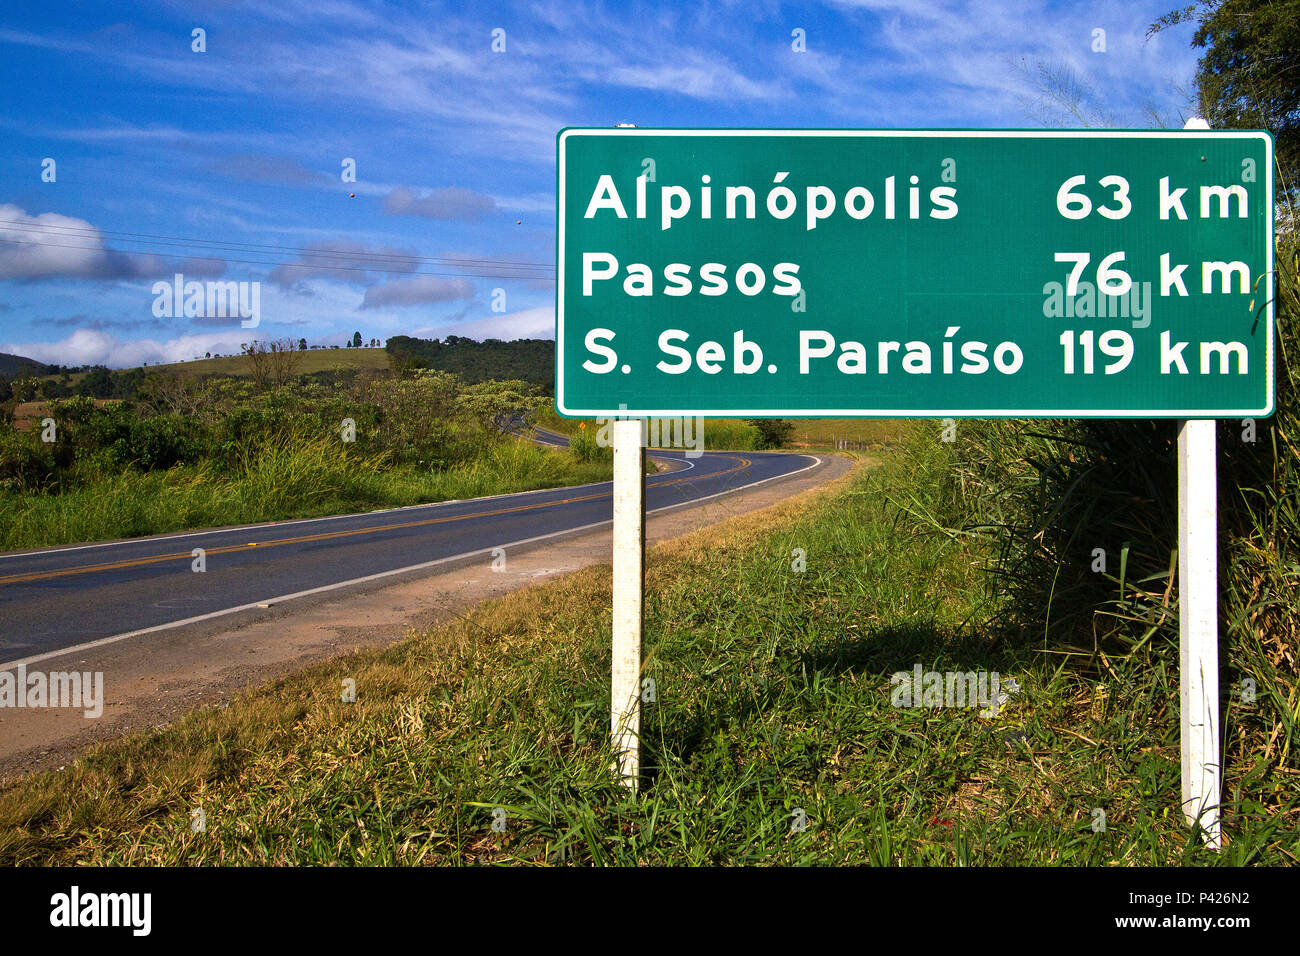 Placa indicando km de cidades de MG; Placa indicando km; Placa de rodovia de Minas Gerais; Minas Gerais; Sudeste; Brasil Stock Photo